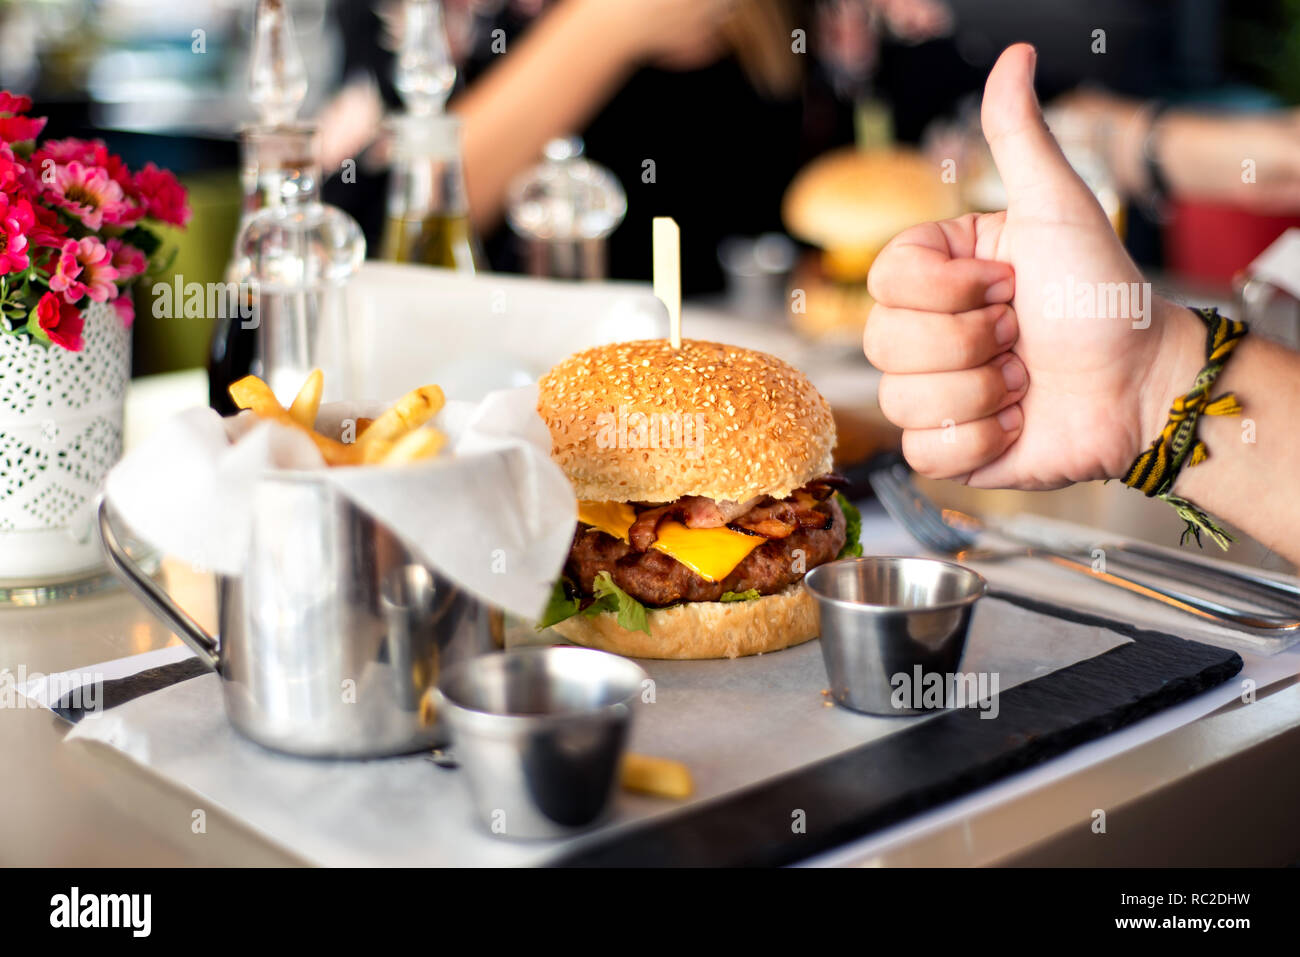 Cheeseburger avec frites servies dans un restaurant Banque D'Images